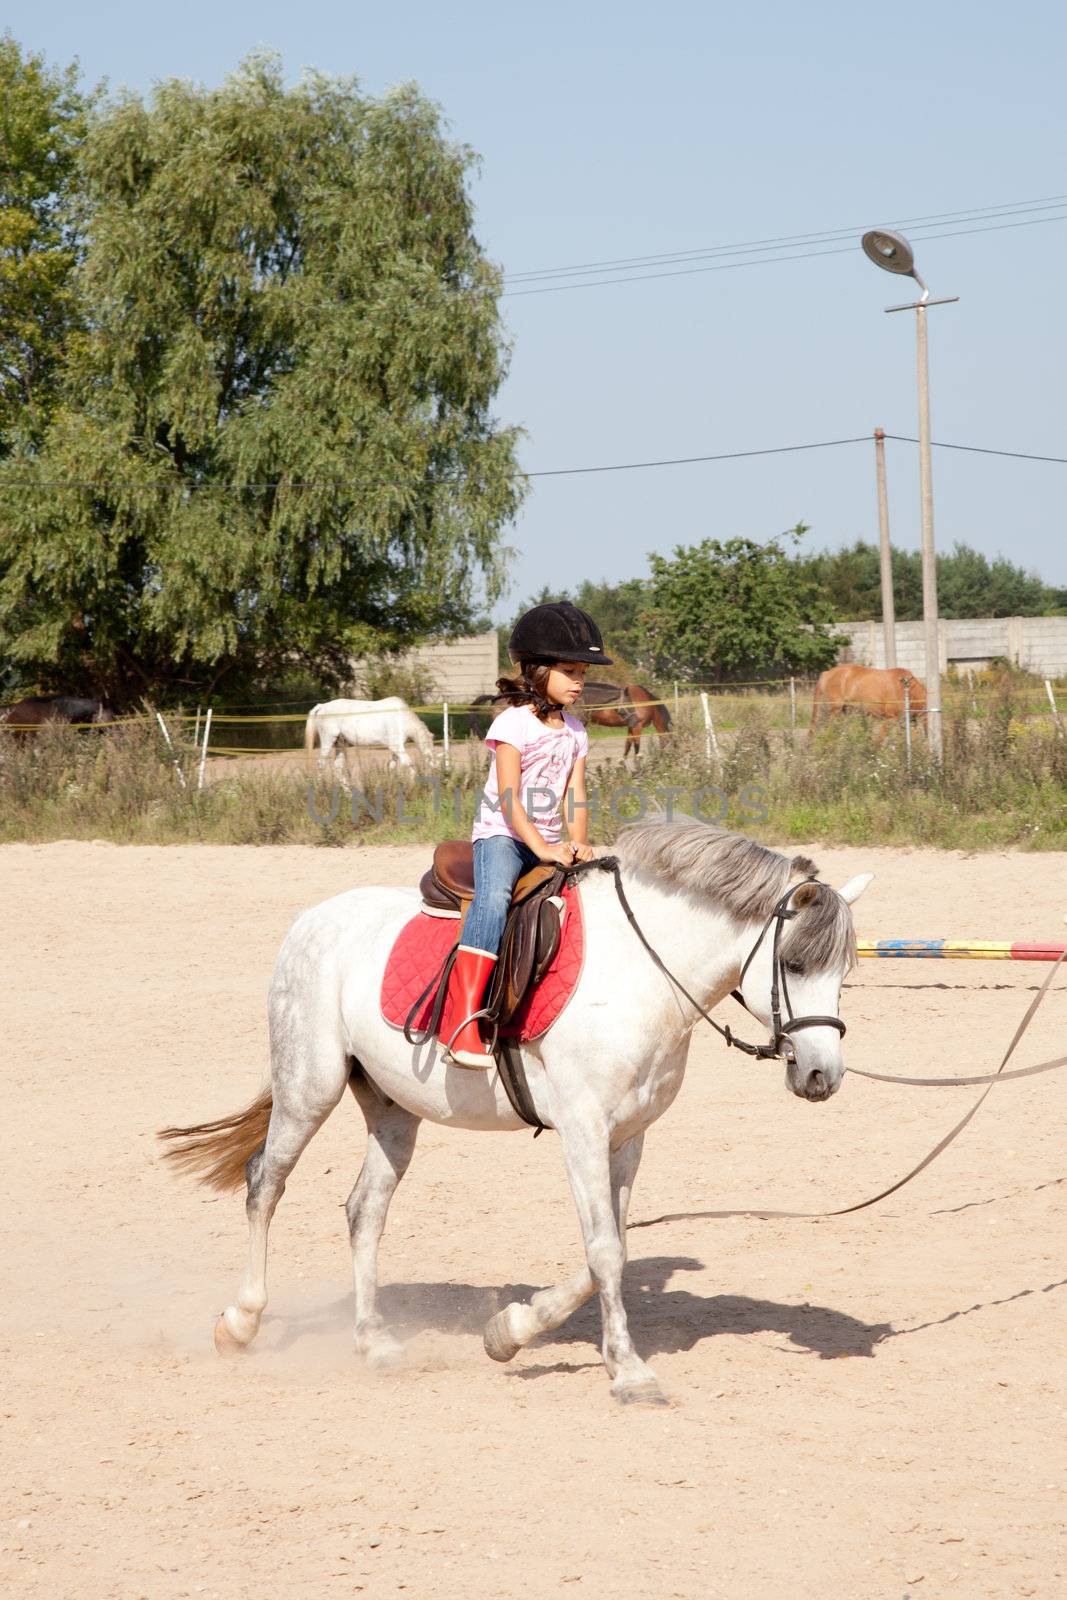 Little Girl Taking Horseback Riding Lessons by DashaRosato